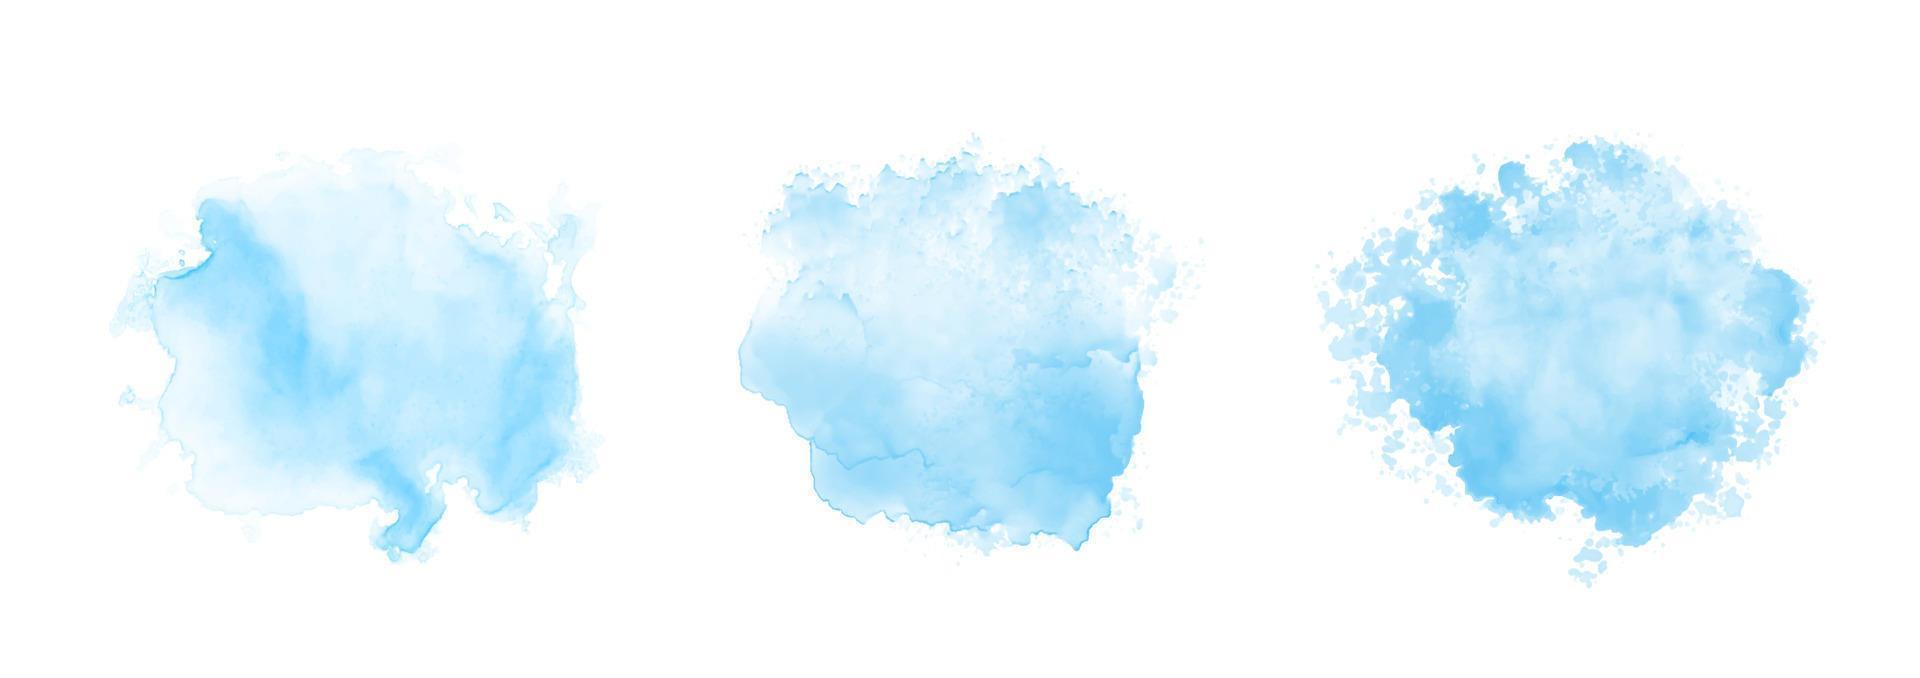 padrão abstrato com nuvens azuis em aquarela sobre fundo branco. textura de respingo impetuoso de água aquarela ciano vetor